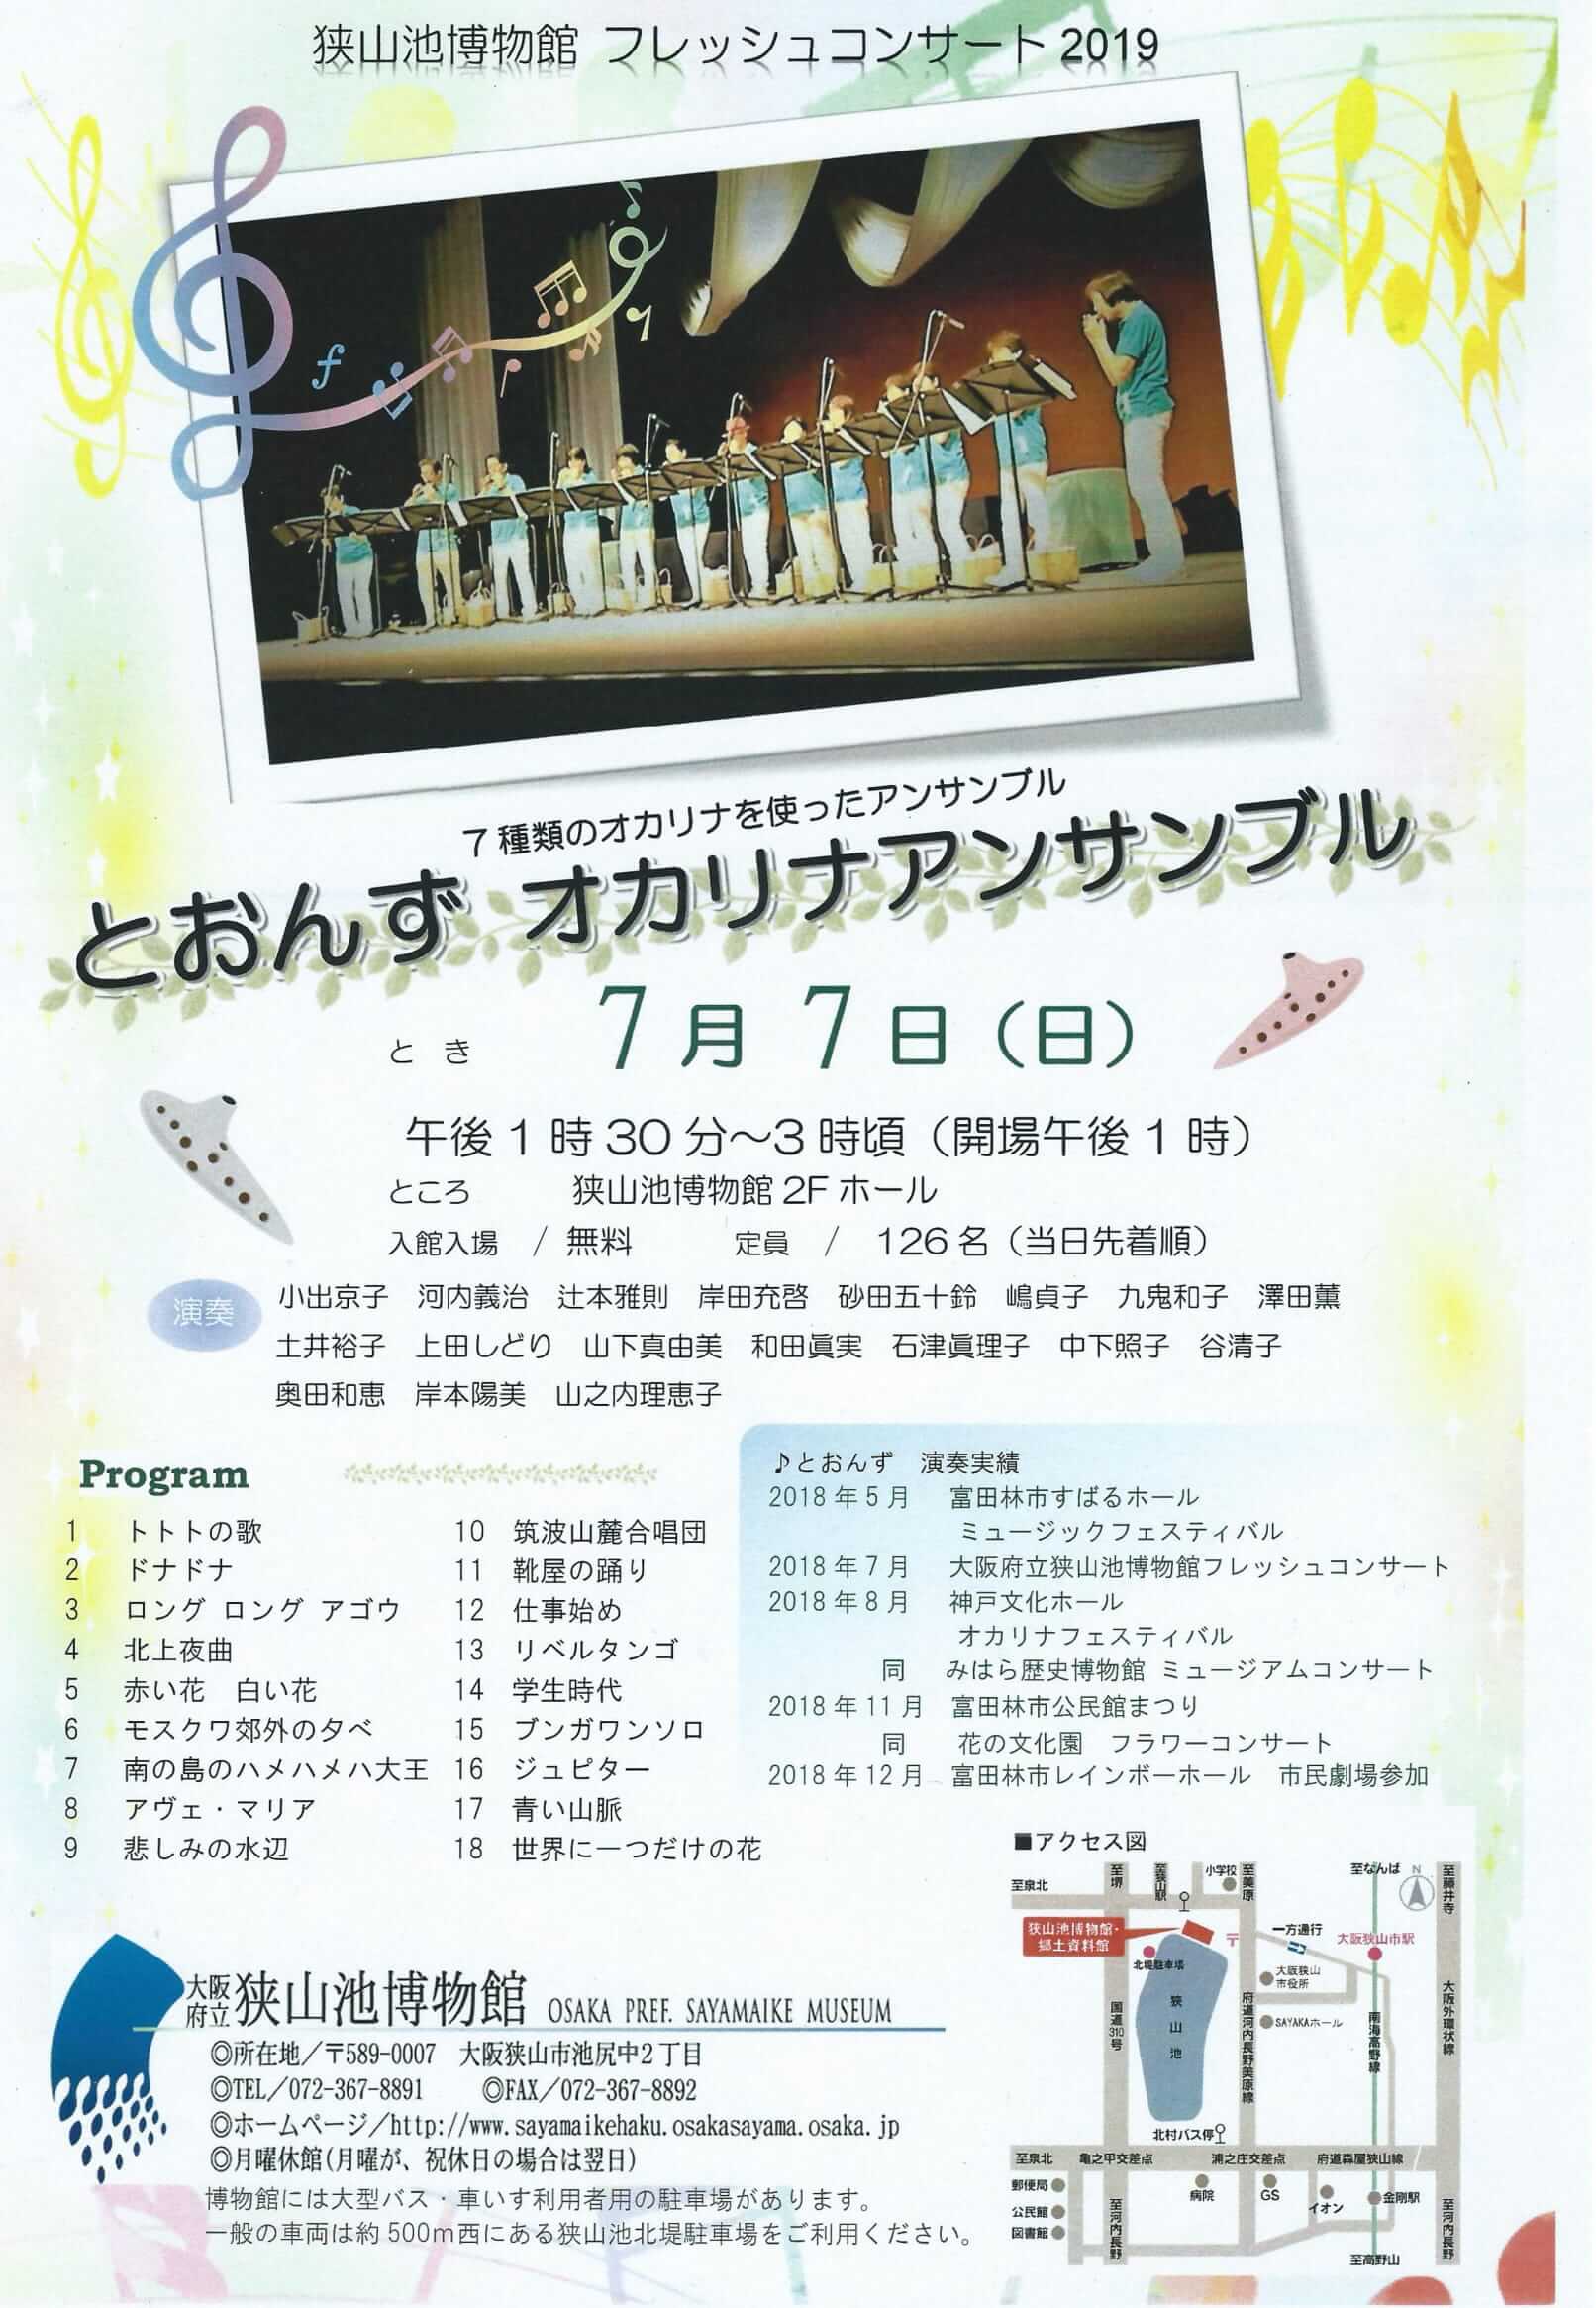 狭山池博物館フレッシュコンサート2019「とおんず オカリナアンサンブル」が2019年7月7日に開催